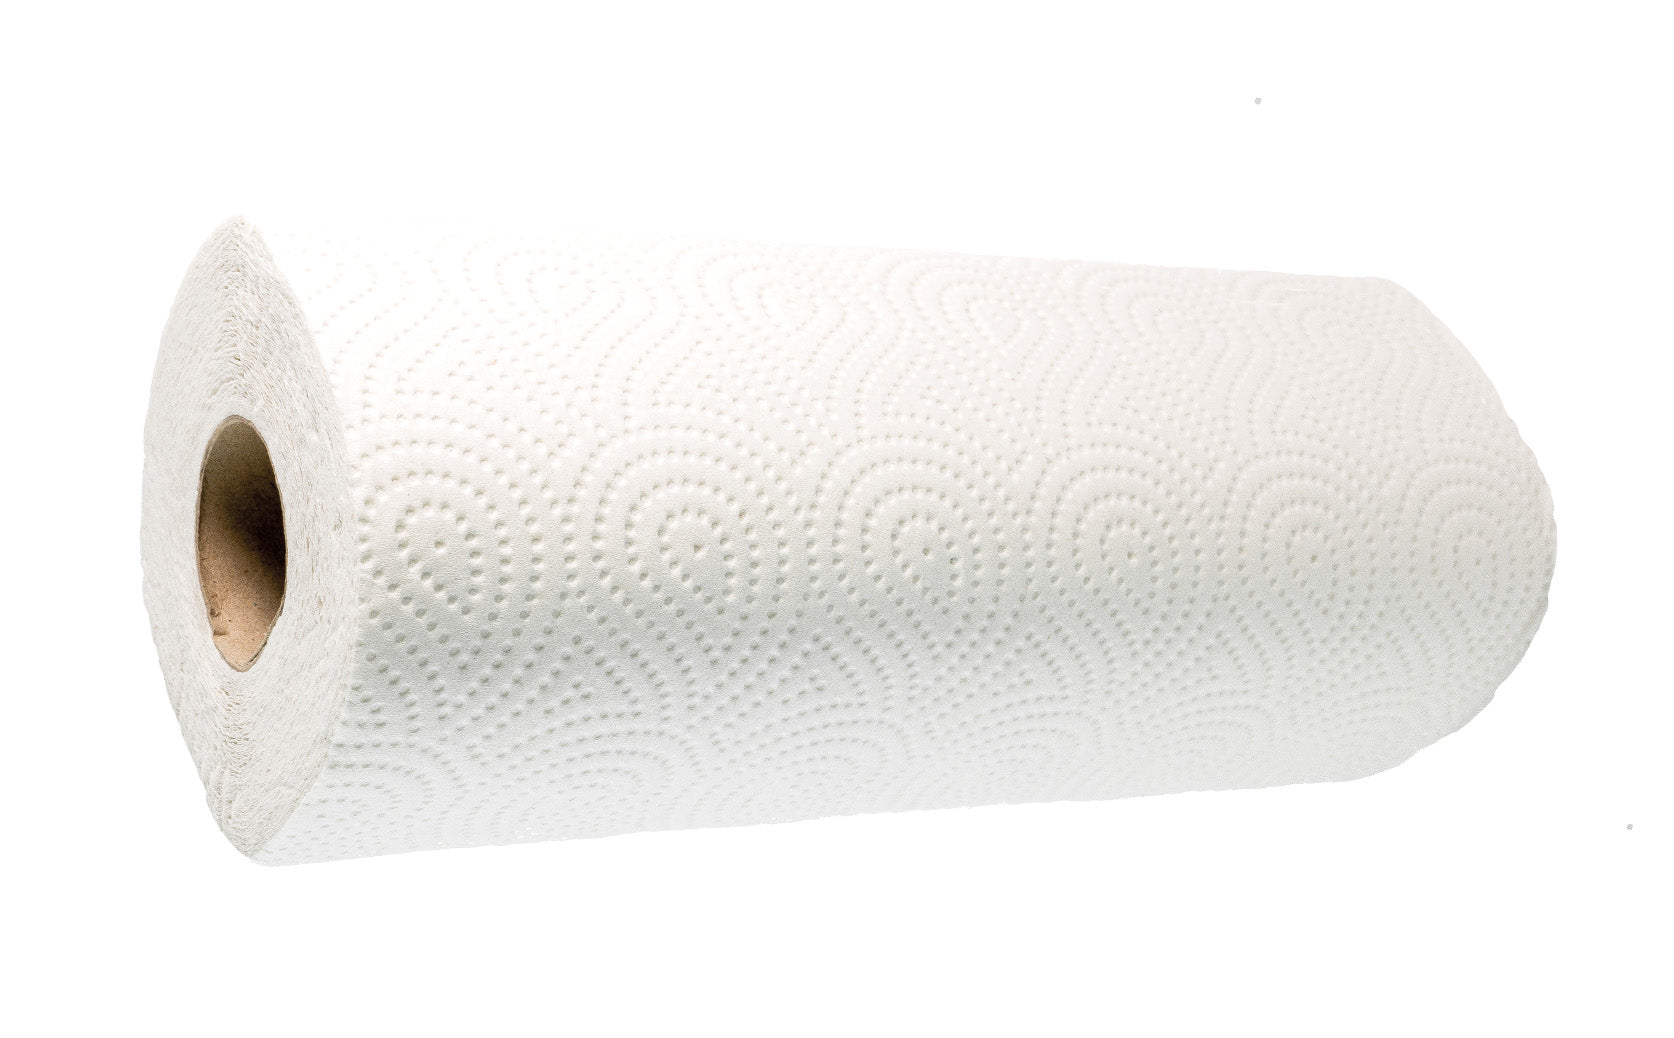 Hygienepapiere Handtuchrolle Küchenrolle 2-lagig - 25,6 x 22,4 cm